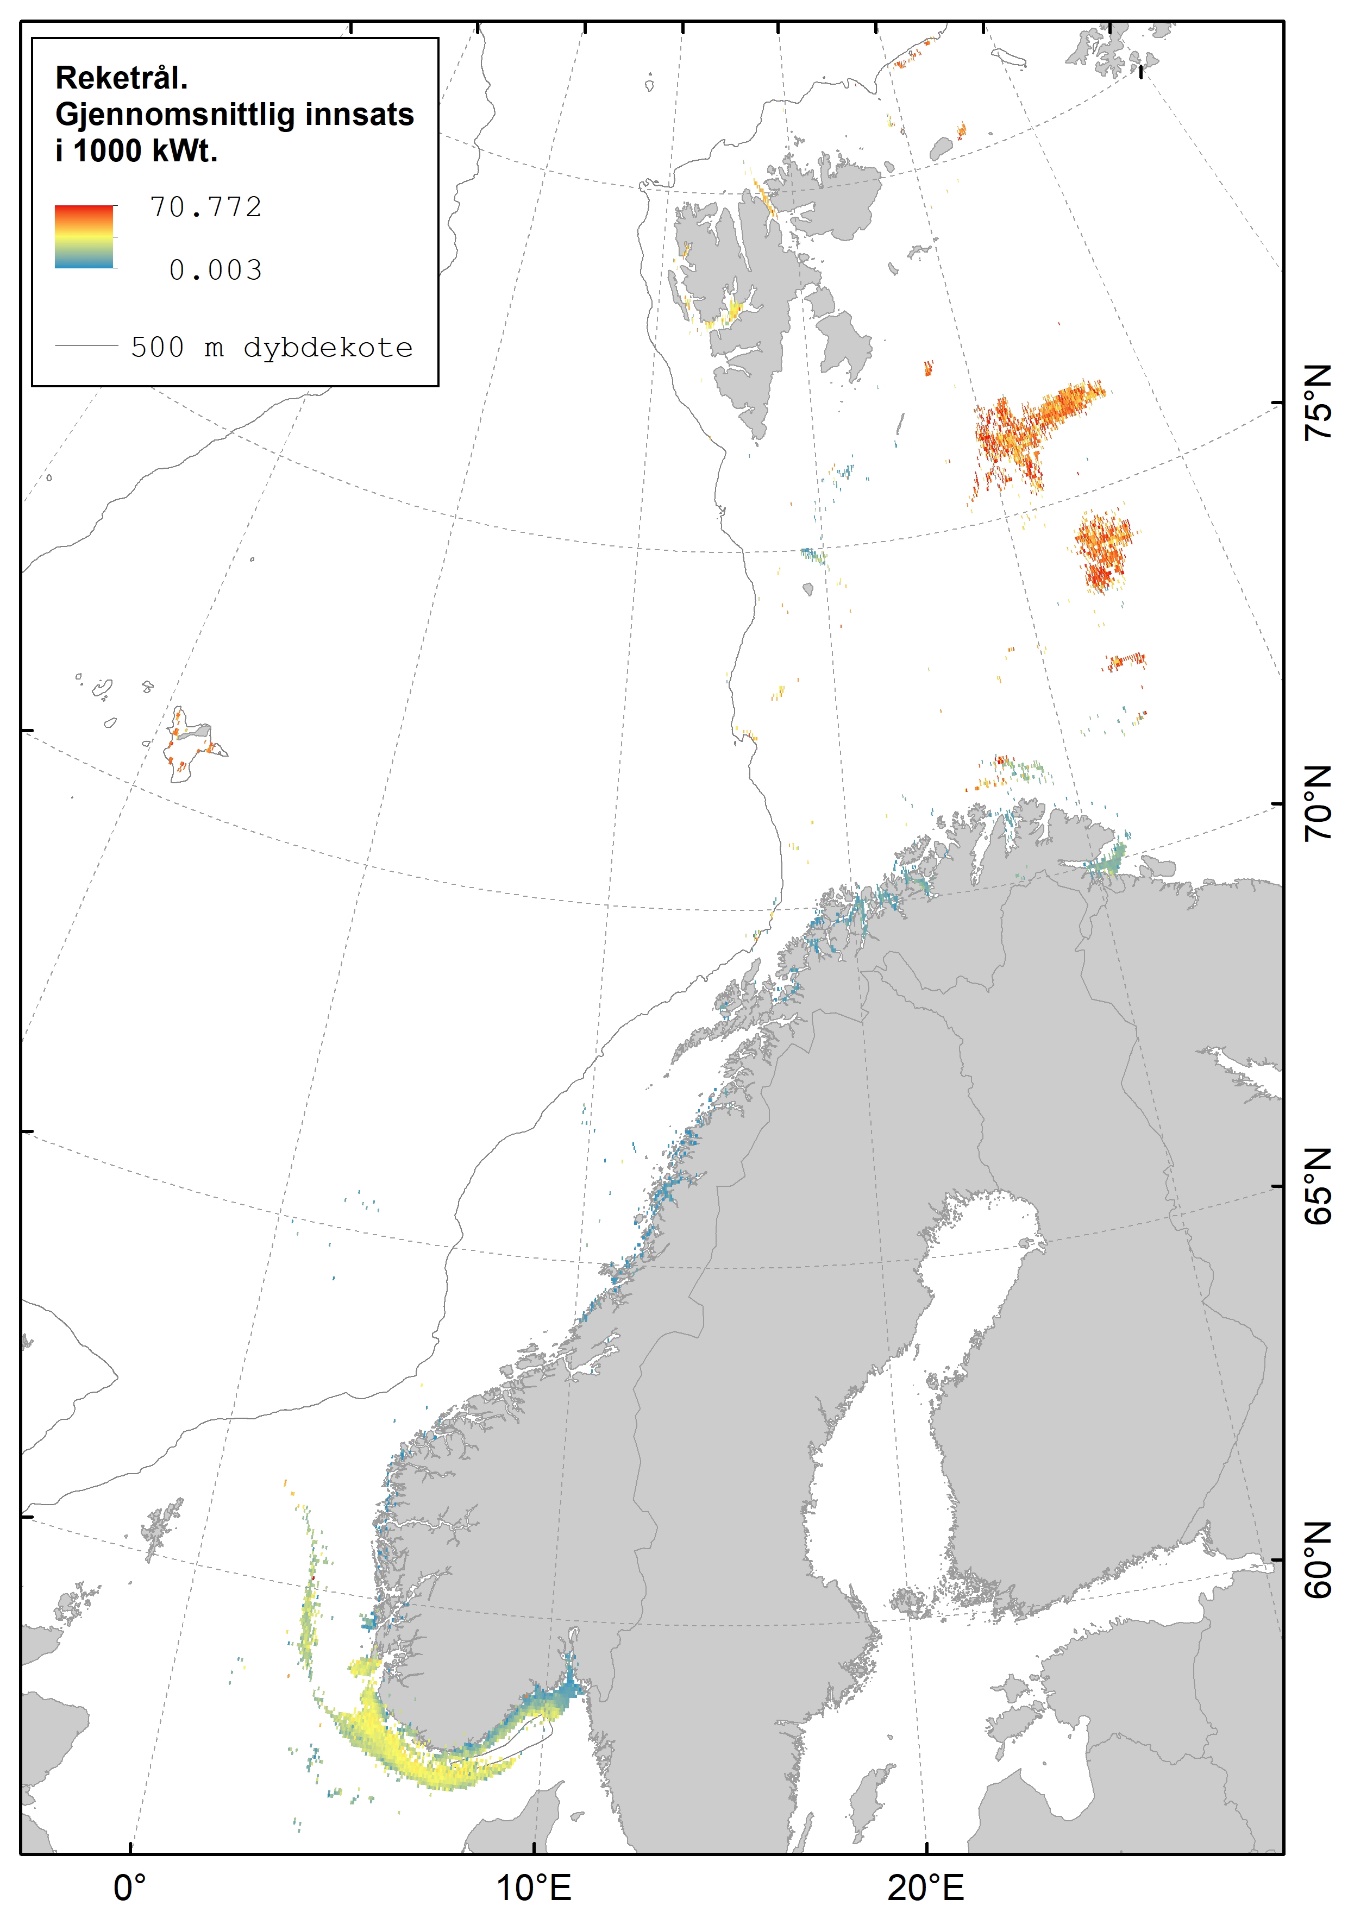 Kart som viser at fiske med reketrål i hovedsak foregår på Storbanken, Sentralbanken, i fjordene og Skagerrak.